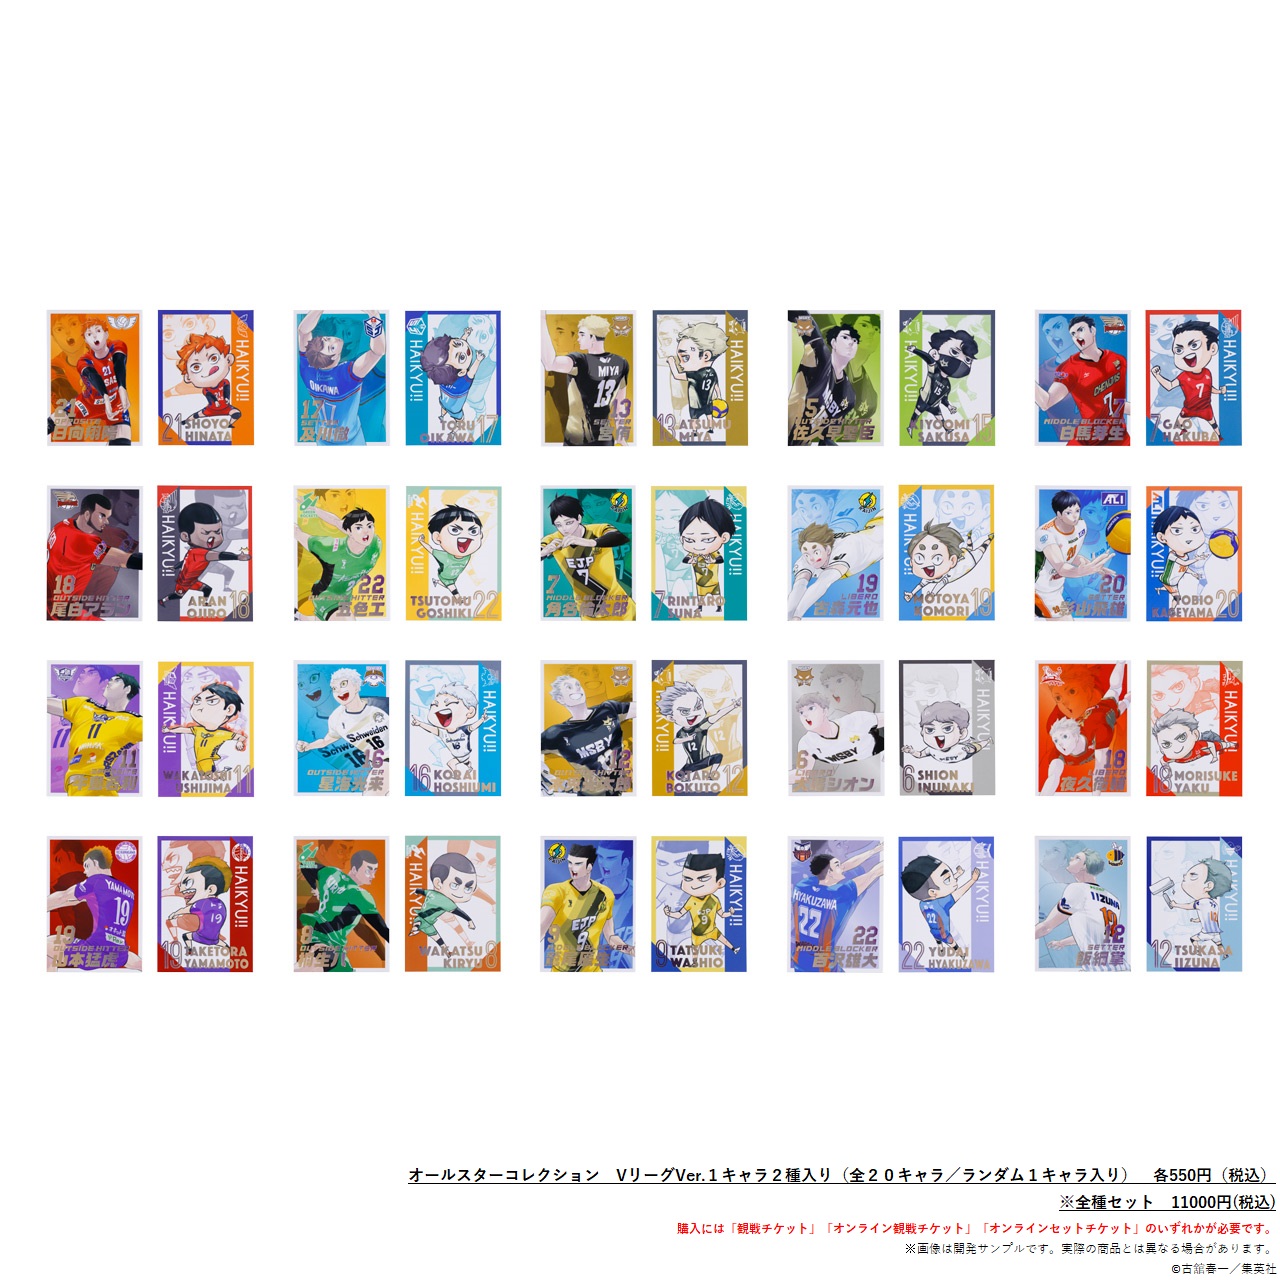 ハイキュー!! × Vリーグ オールスターコレクション - 少年漫画